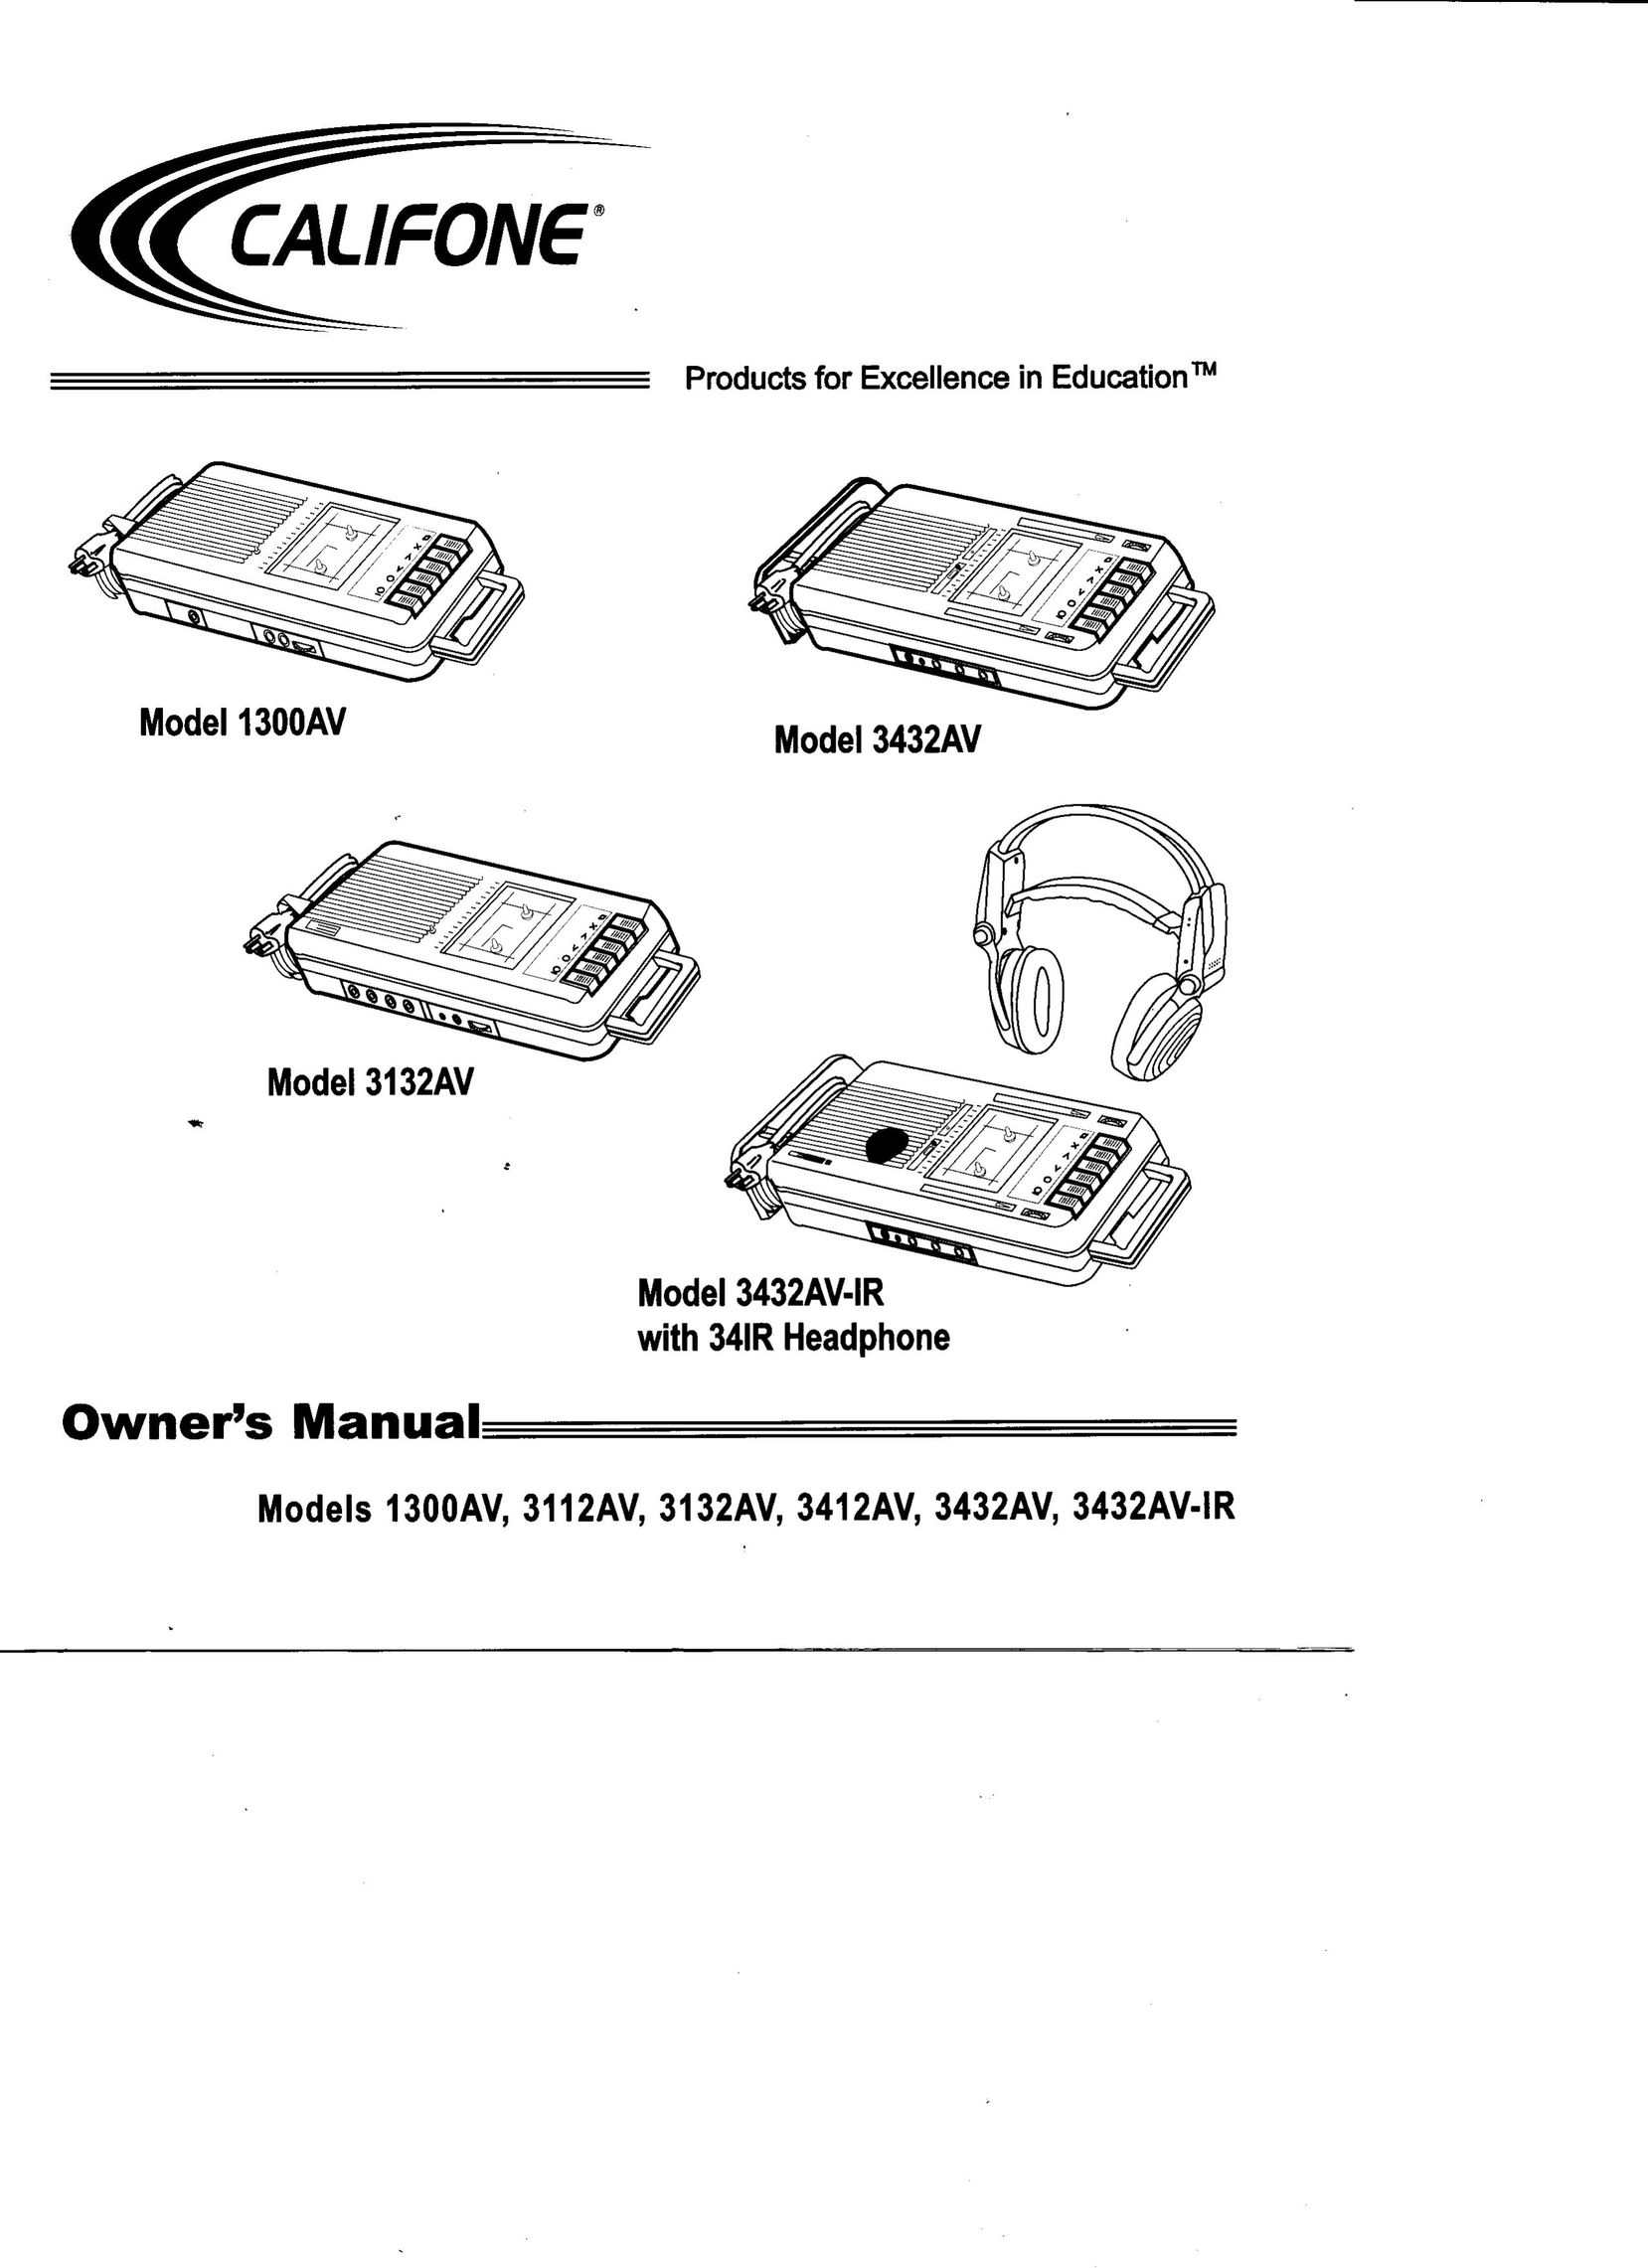 Califone 3132AV Cassette Player User Manual (Page 1)